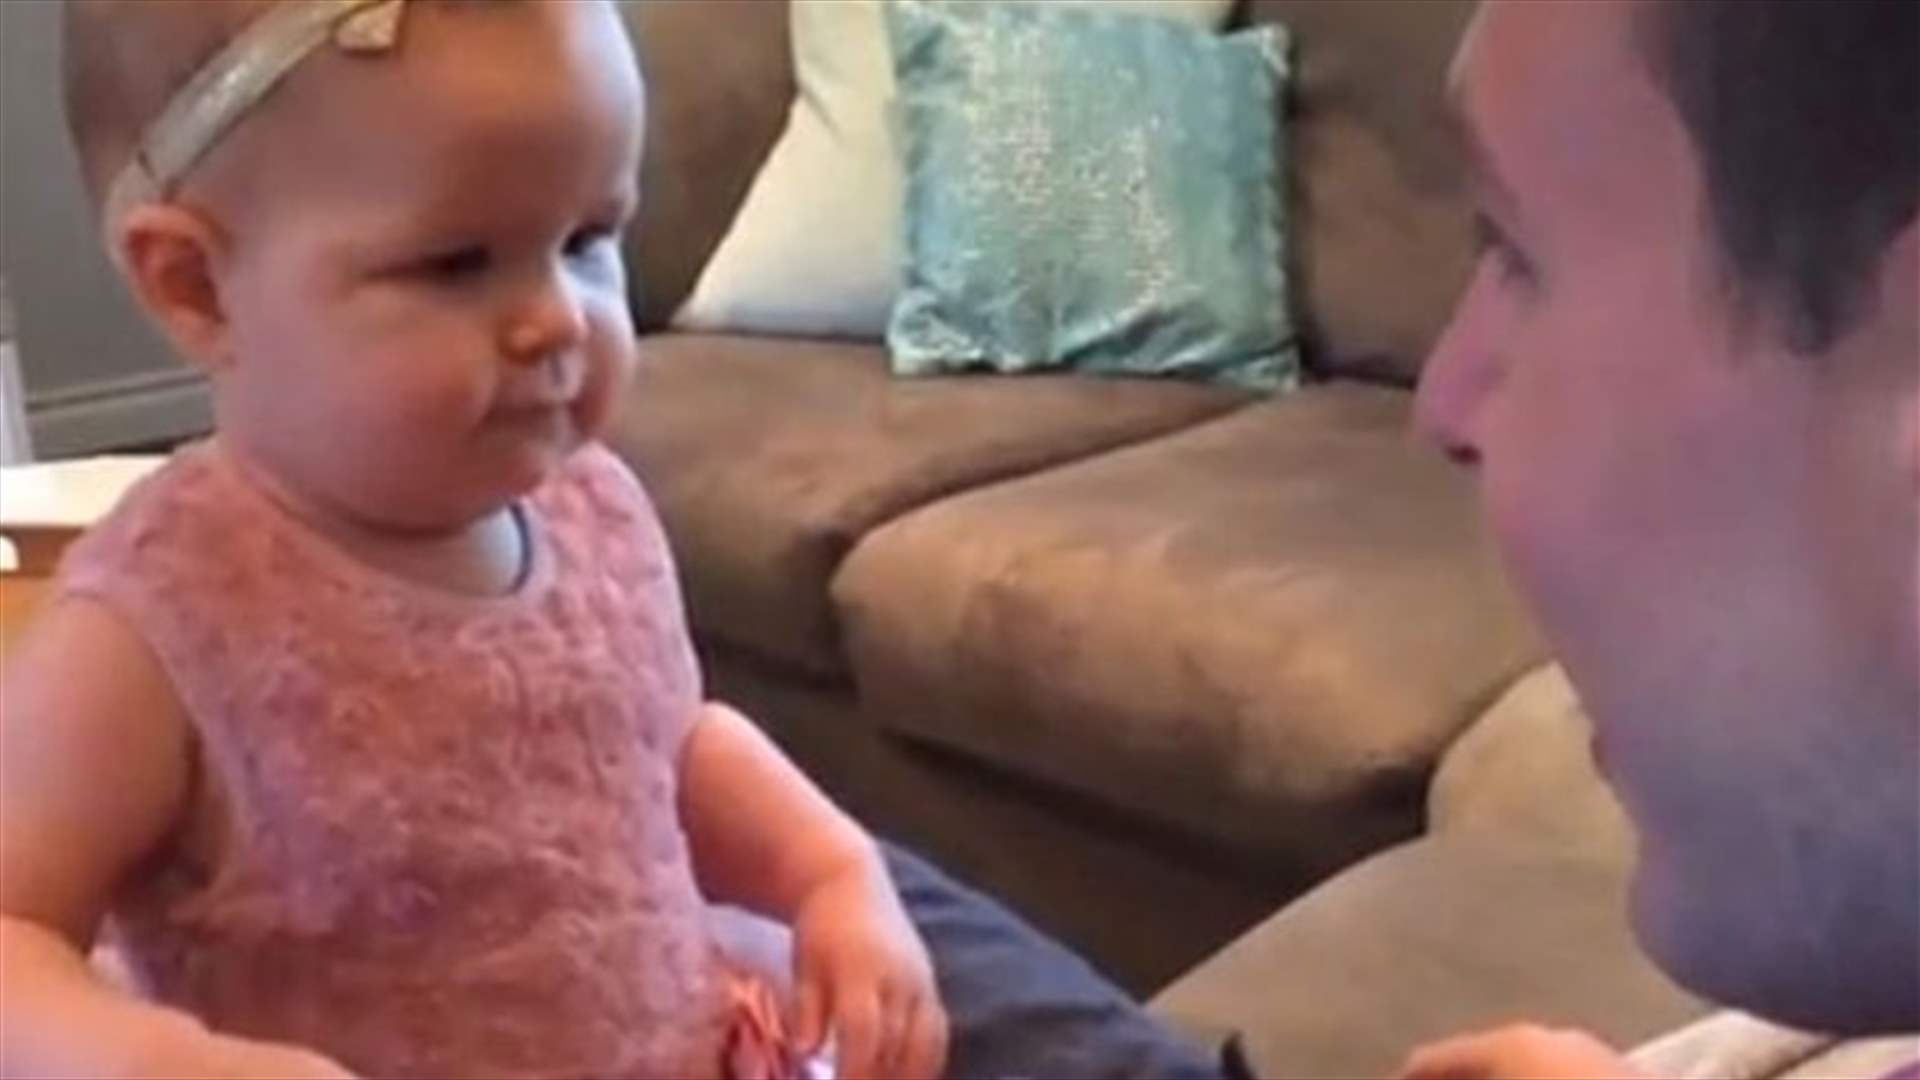 بالفيديو: طفلة تتفاجأ بمظهر والدها بعد الحلاقة... ماذا فعلت؟